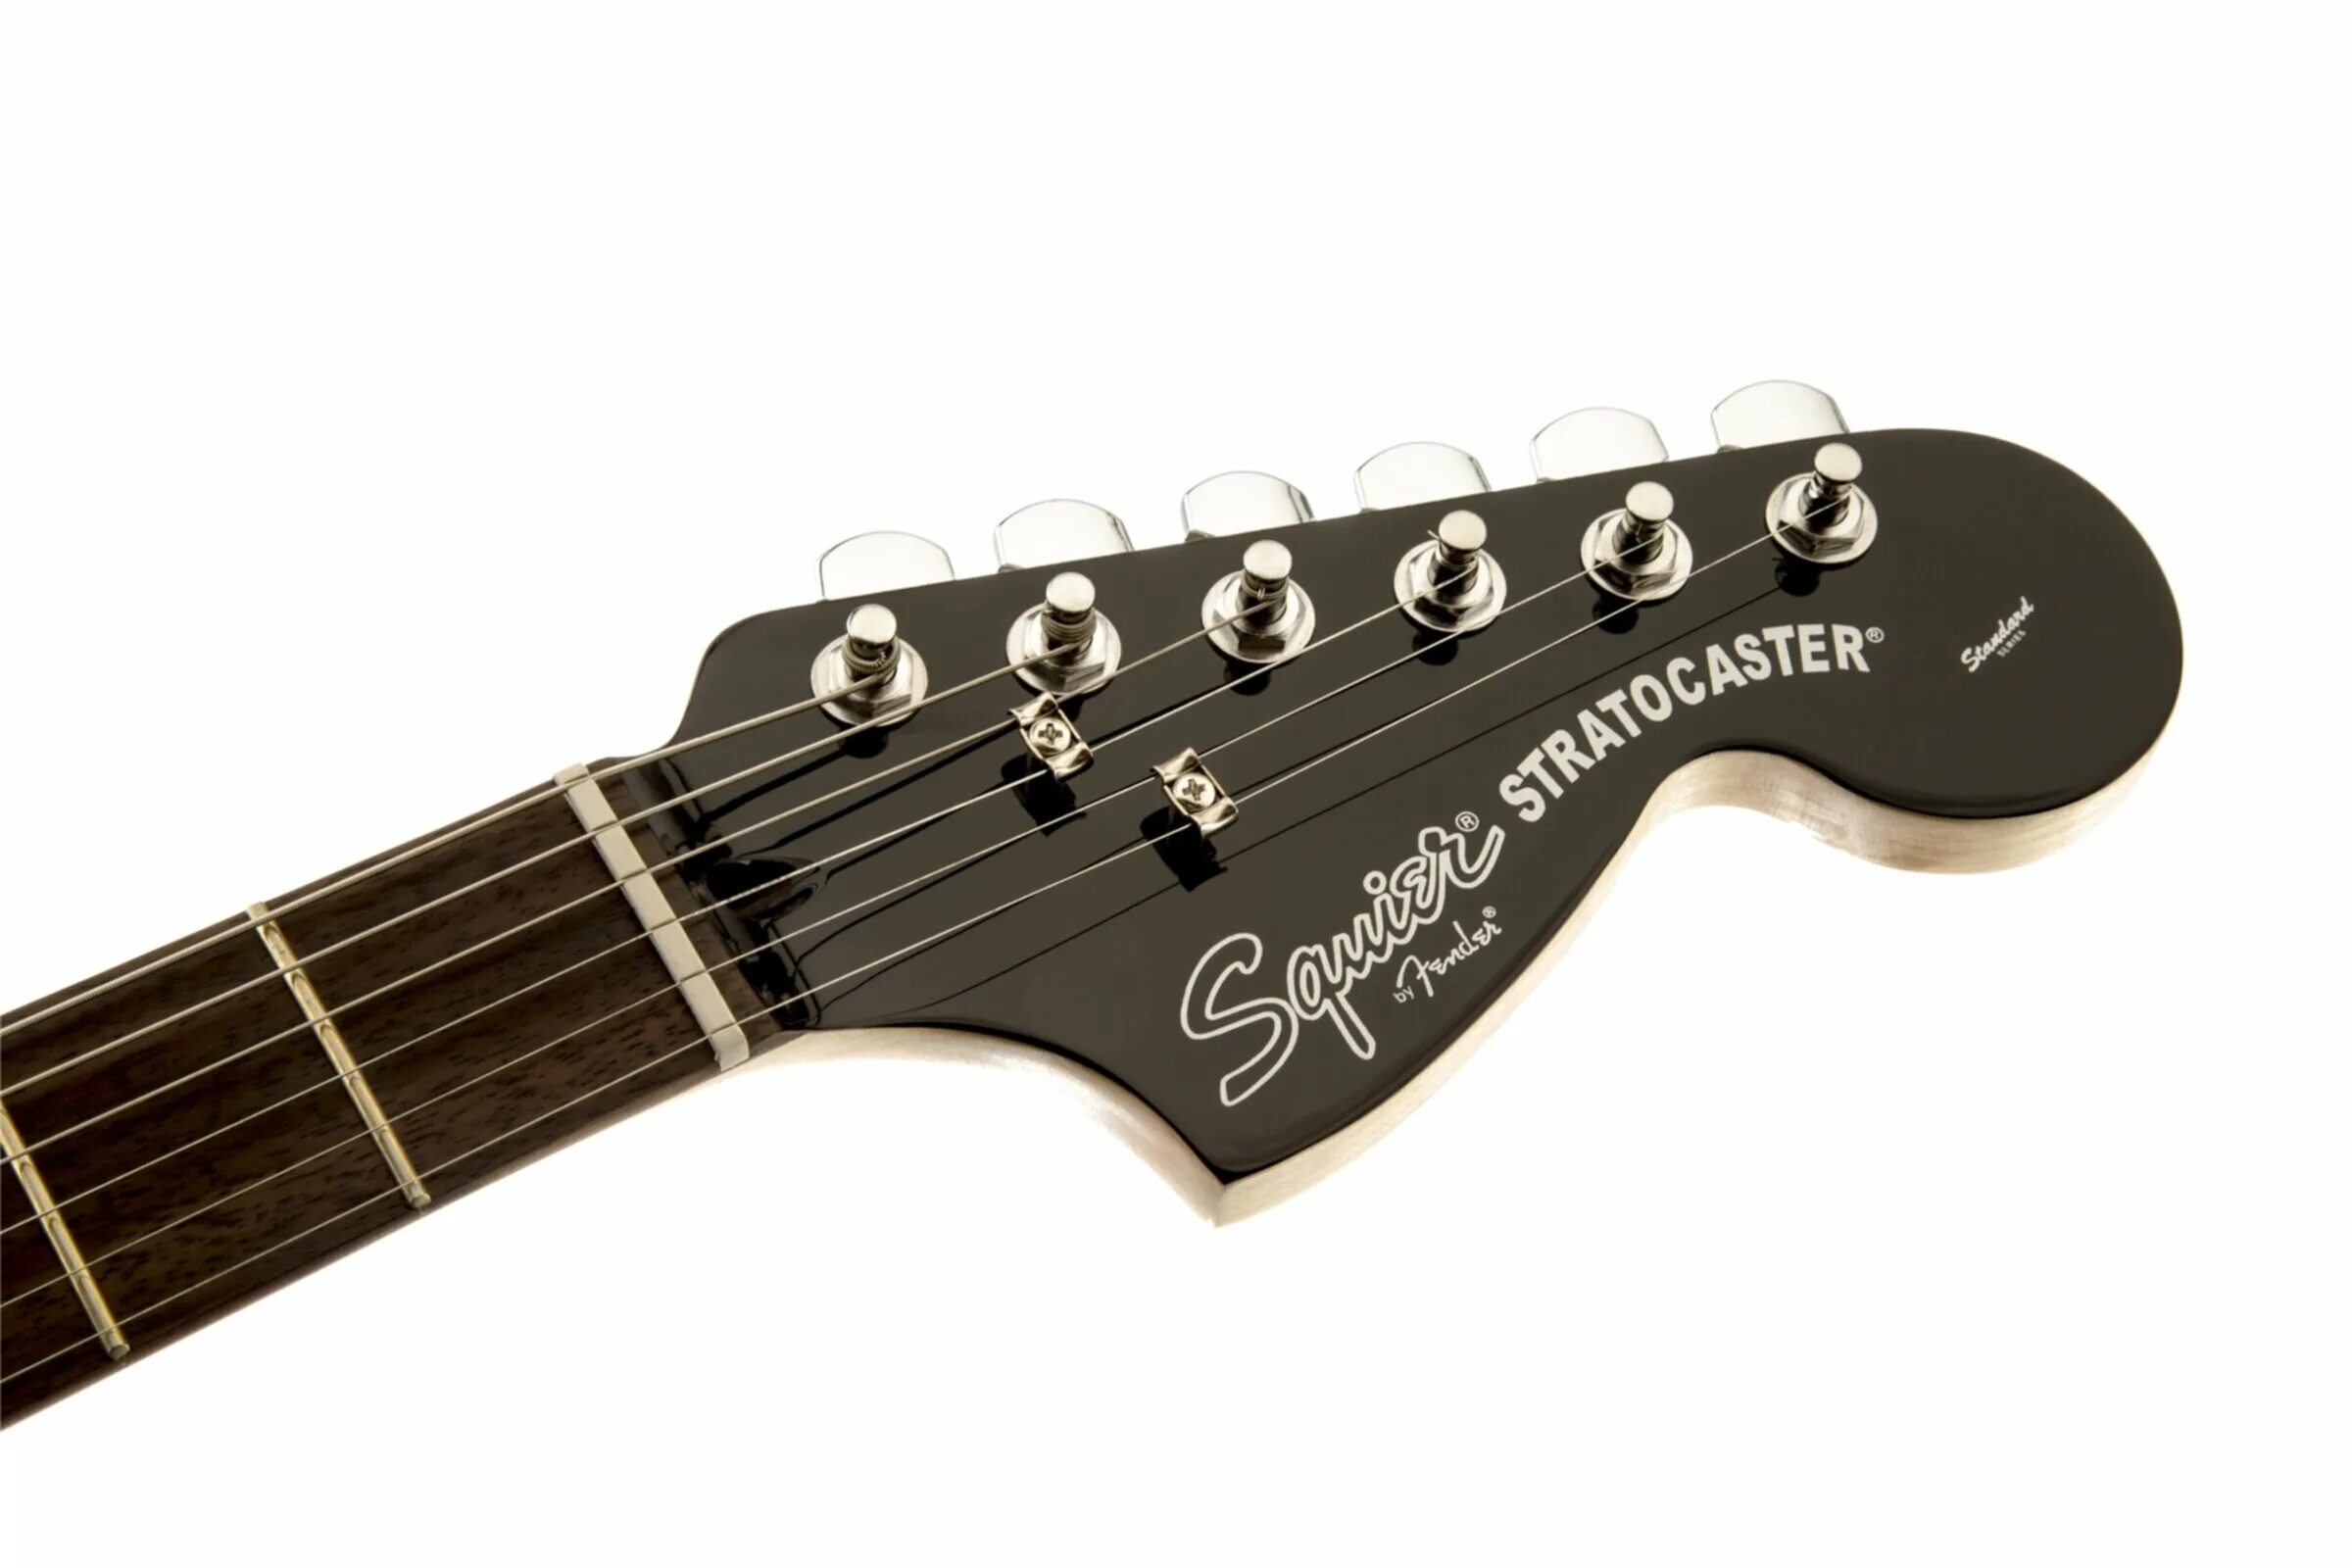 Fender Stratocaster чёрный Squier. Гитара Fender Stratocaster Black гриф. Squier Standard Stratocaster Black and Chrome. Squier Standard Stratocaster Black.